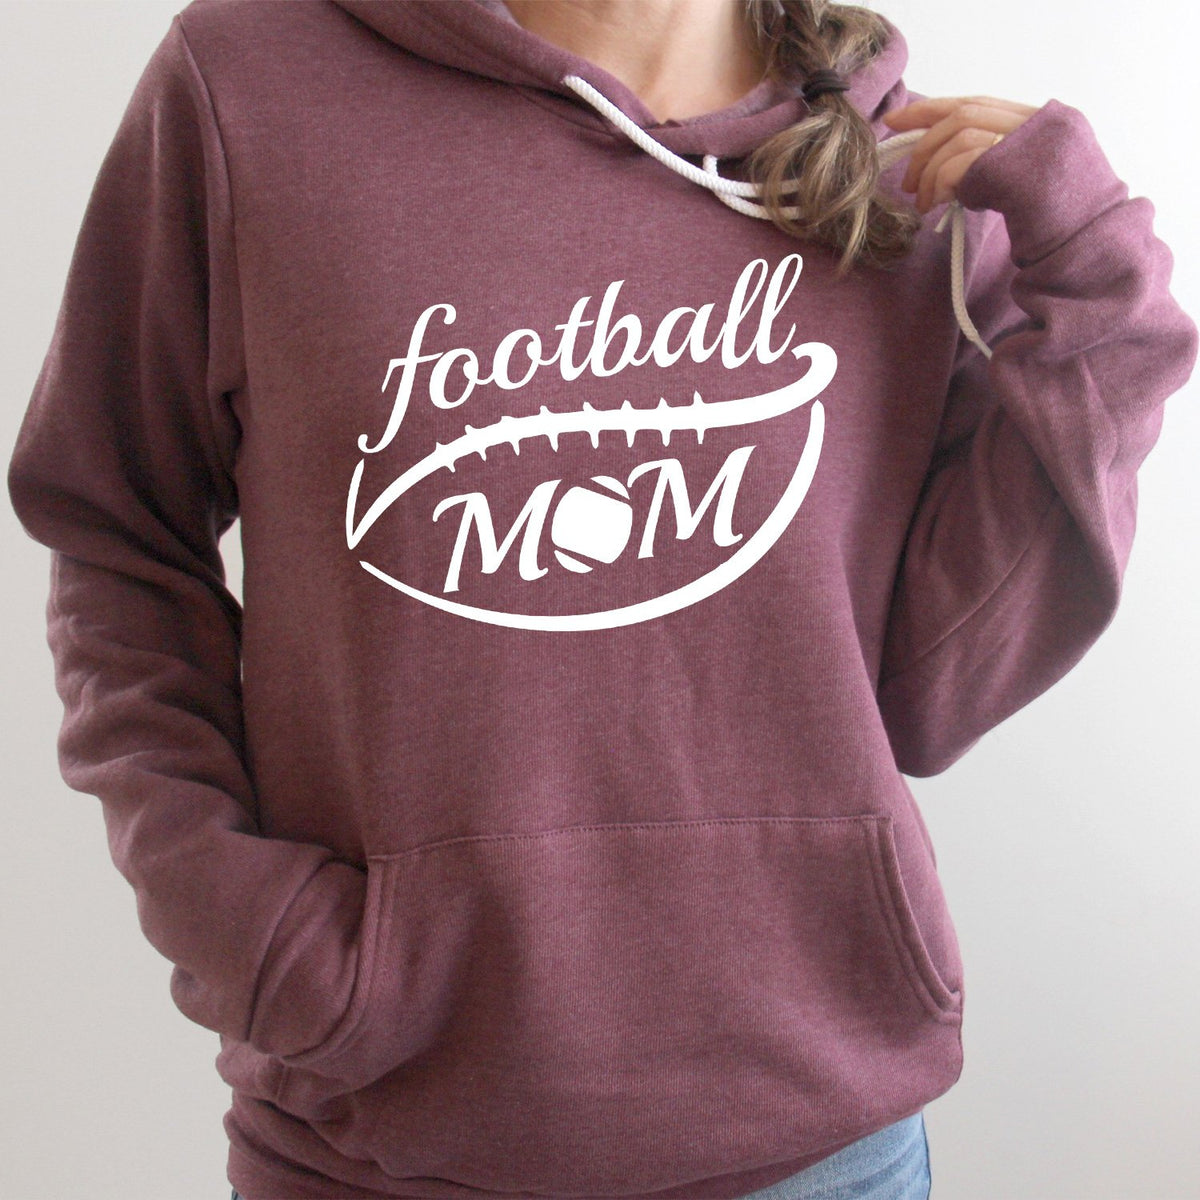 Football Mom - Hoodie Sweatshirt